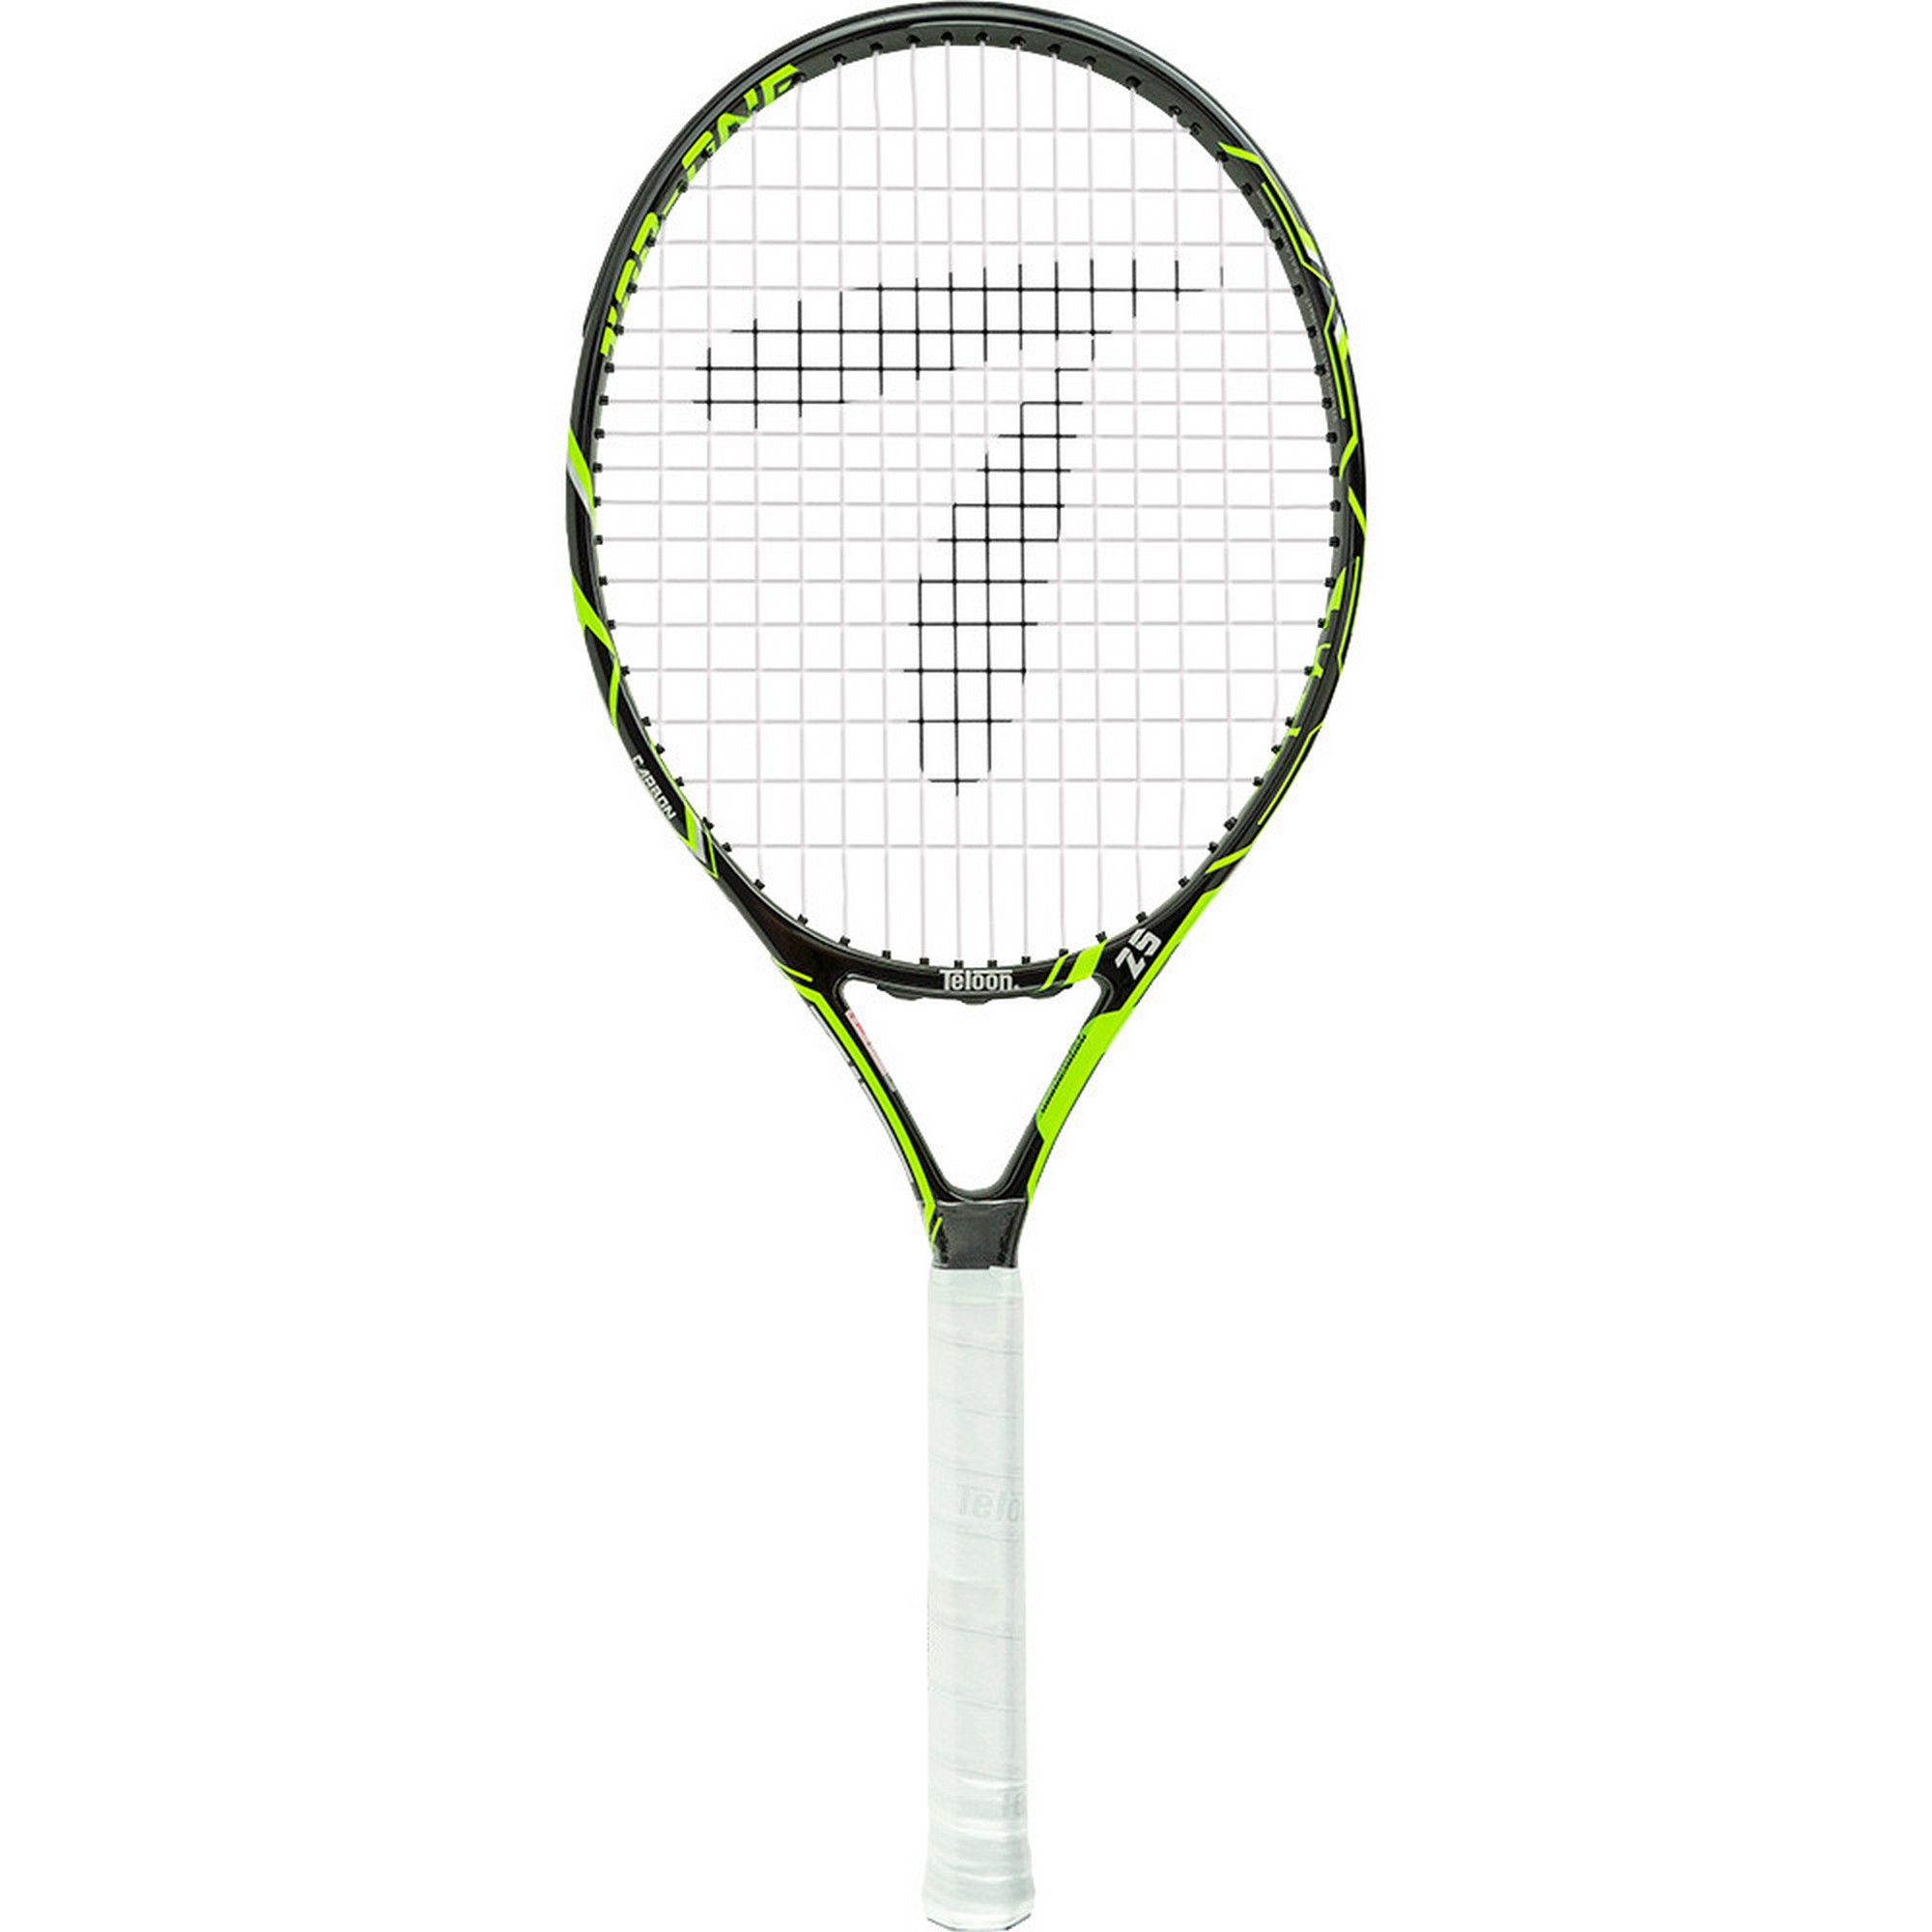 Ракетка для большого тенниса детская Teloon 25 Gr000 335123-GR зеленый 2000_2000